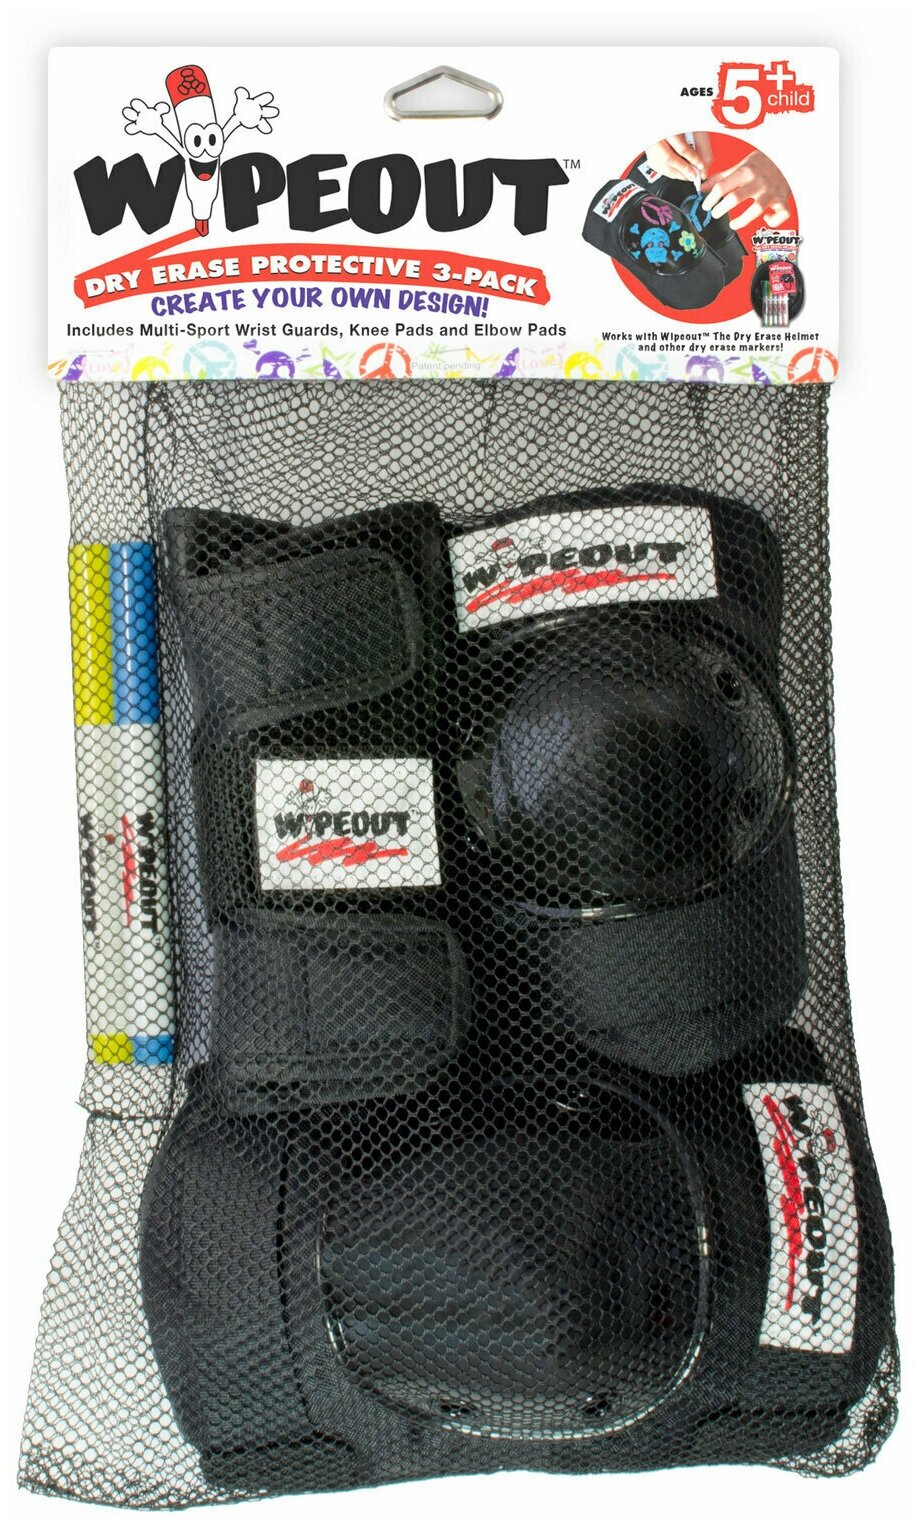 Комплект защиты с фломастерами Wipeout Black (M 5+) [3 в 1]